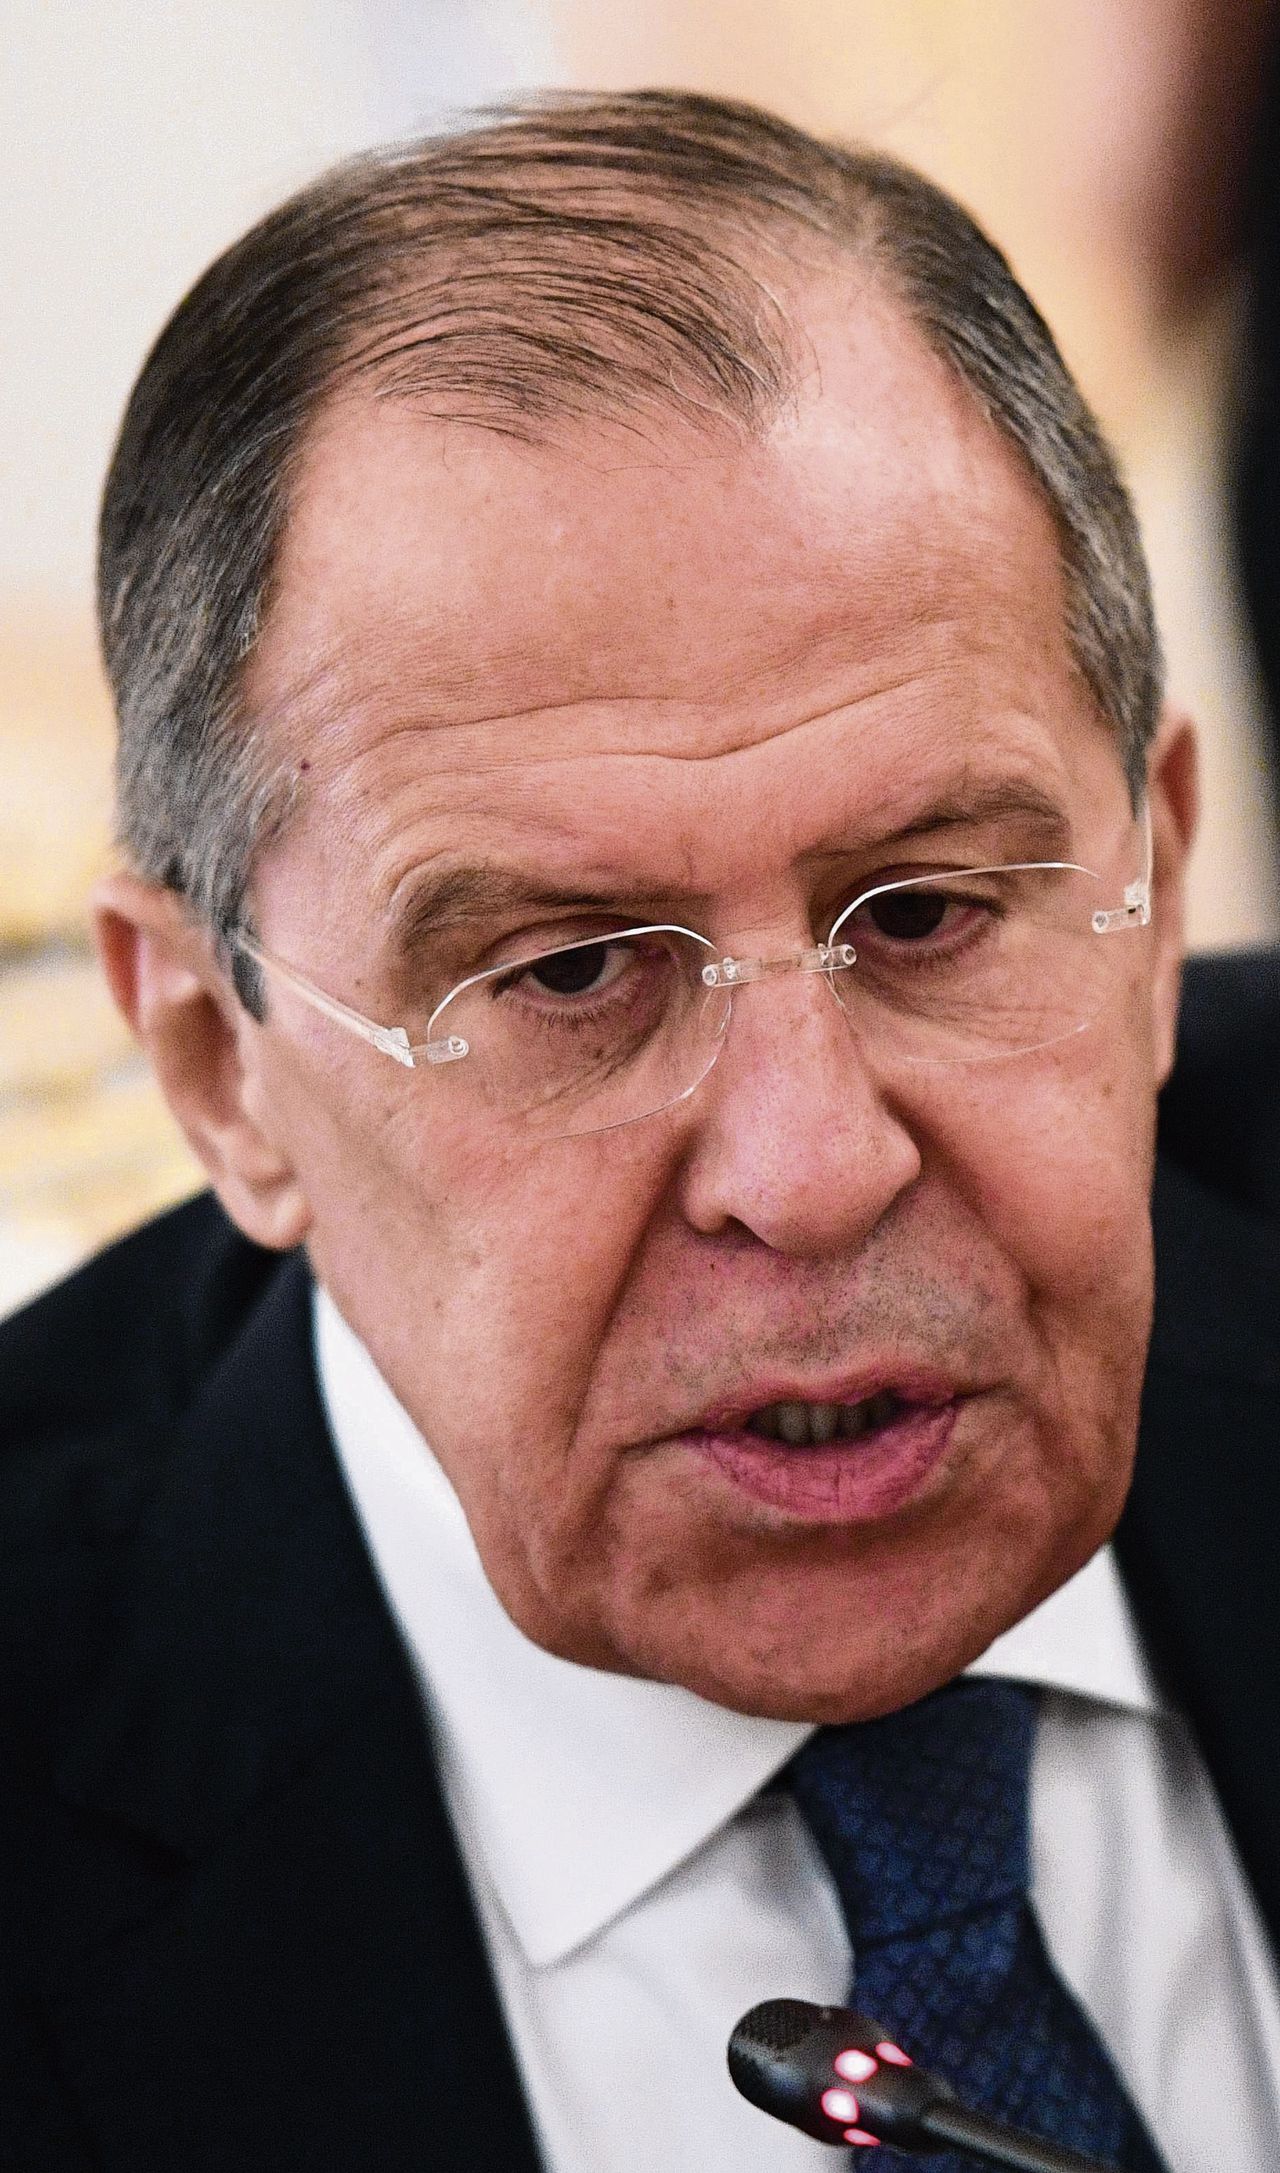 Gaf de Russische minister Lavrov echt toe dat Rusland meevecht in Oost-Oekraïne? 